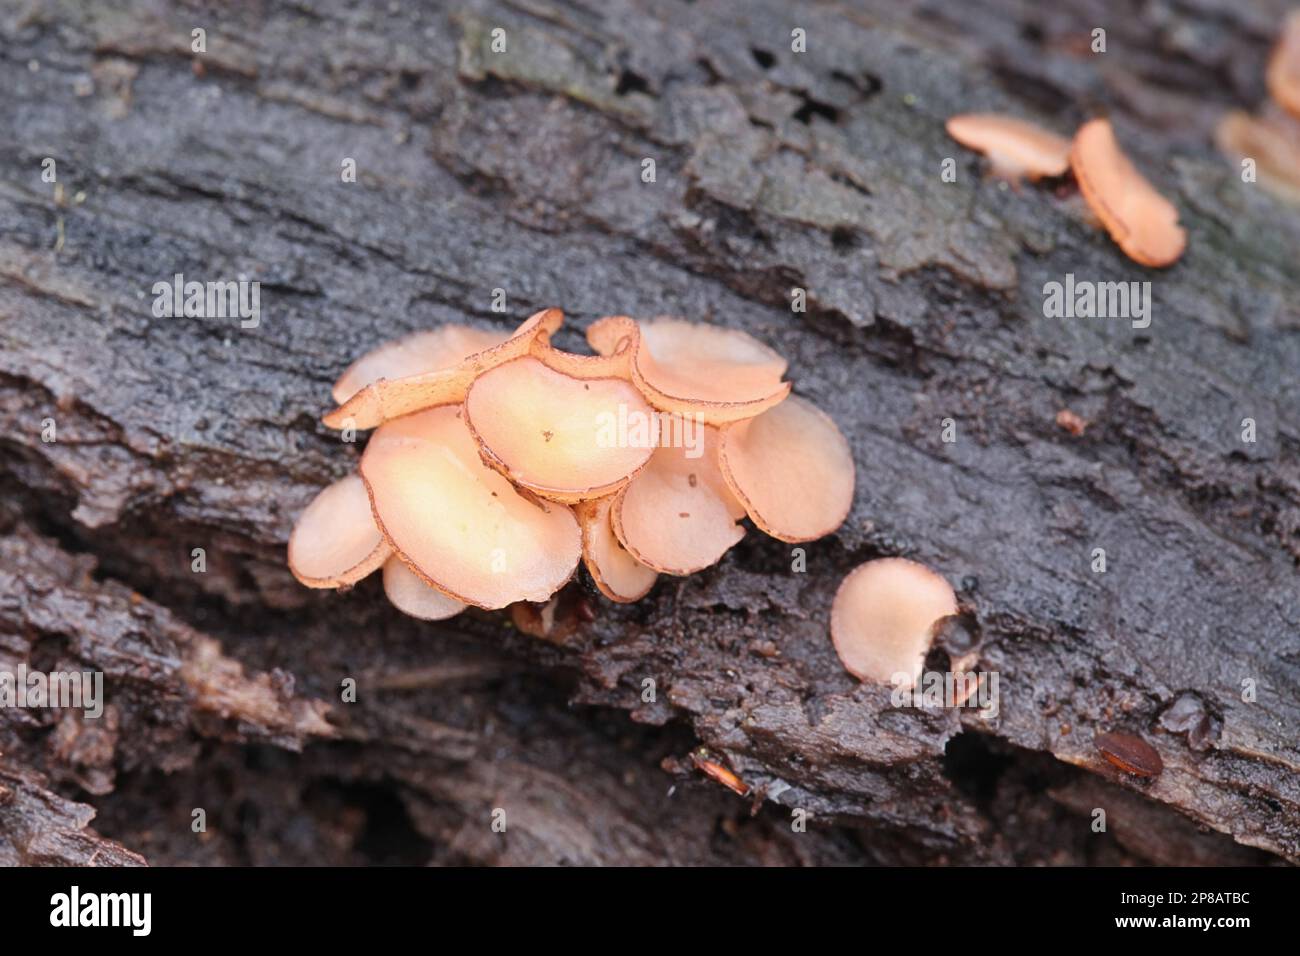 Aleuriella personata, also known as Pyrenopeziza personata, wild fungus from Finland, no common English name Stock Photo